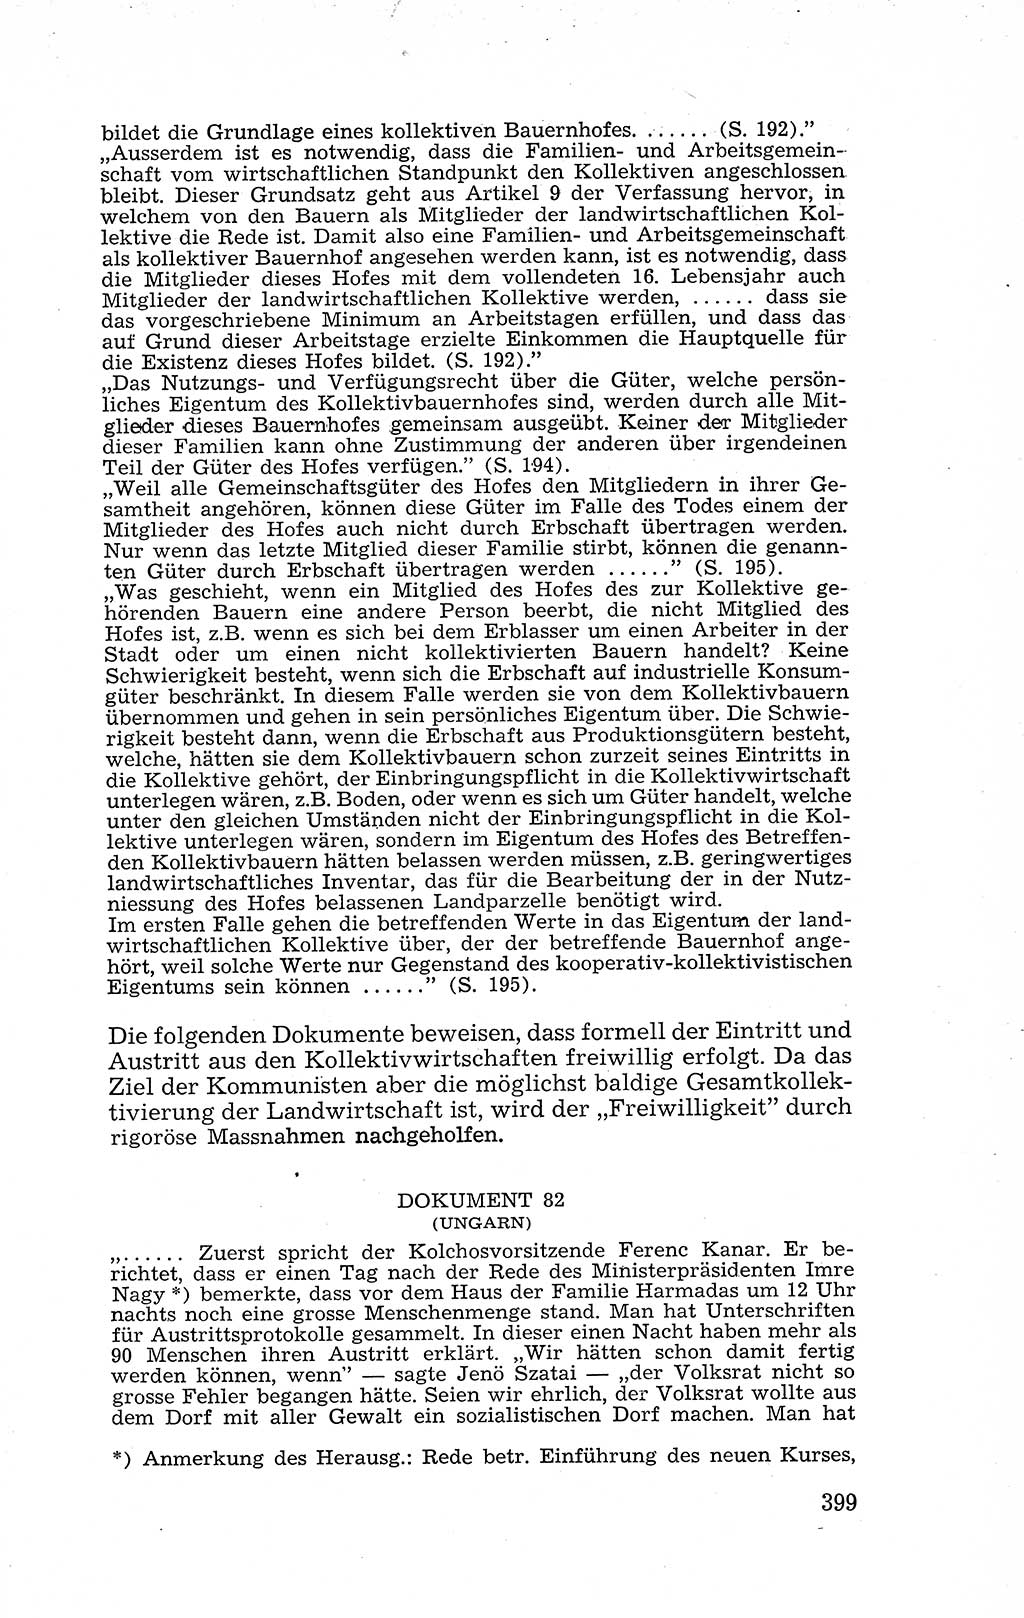 Recht in Fesseln, Dokumente, Internationale Juristen-Kommission [Bundesrepublik Deutschland (BRD)] 1955, Seite 399 (R. Dok. IJK BRD 1955, S. 399)